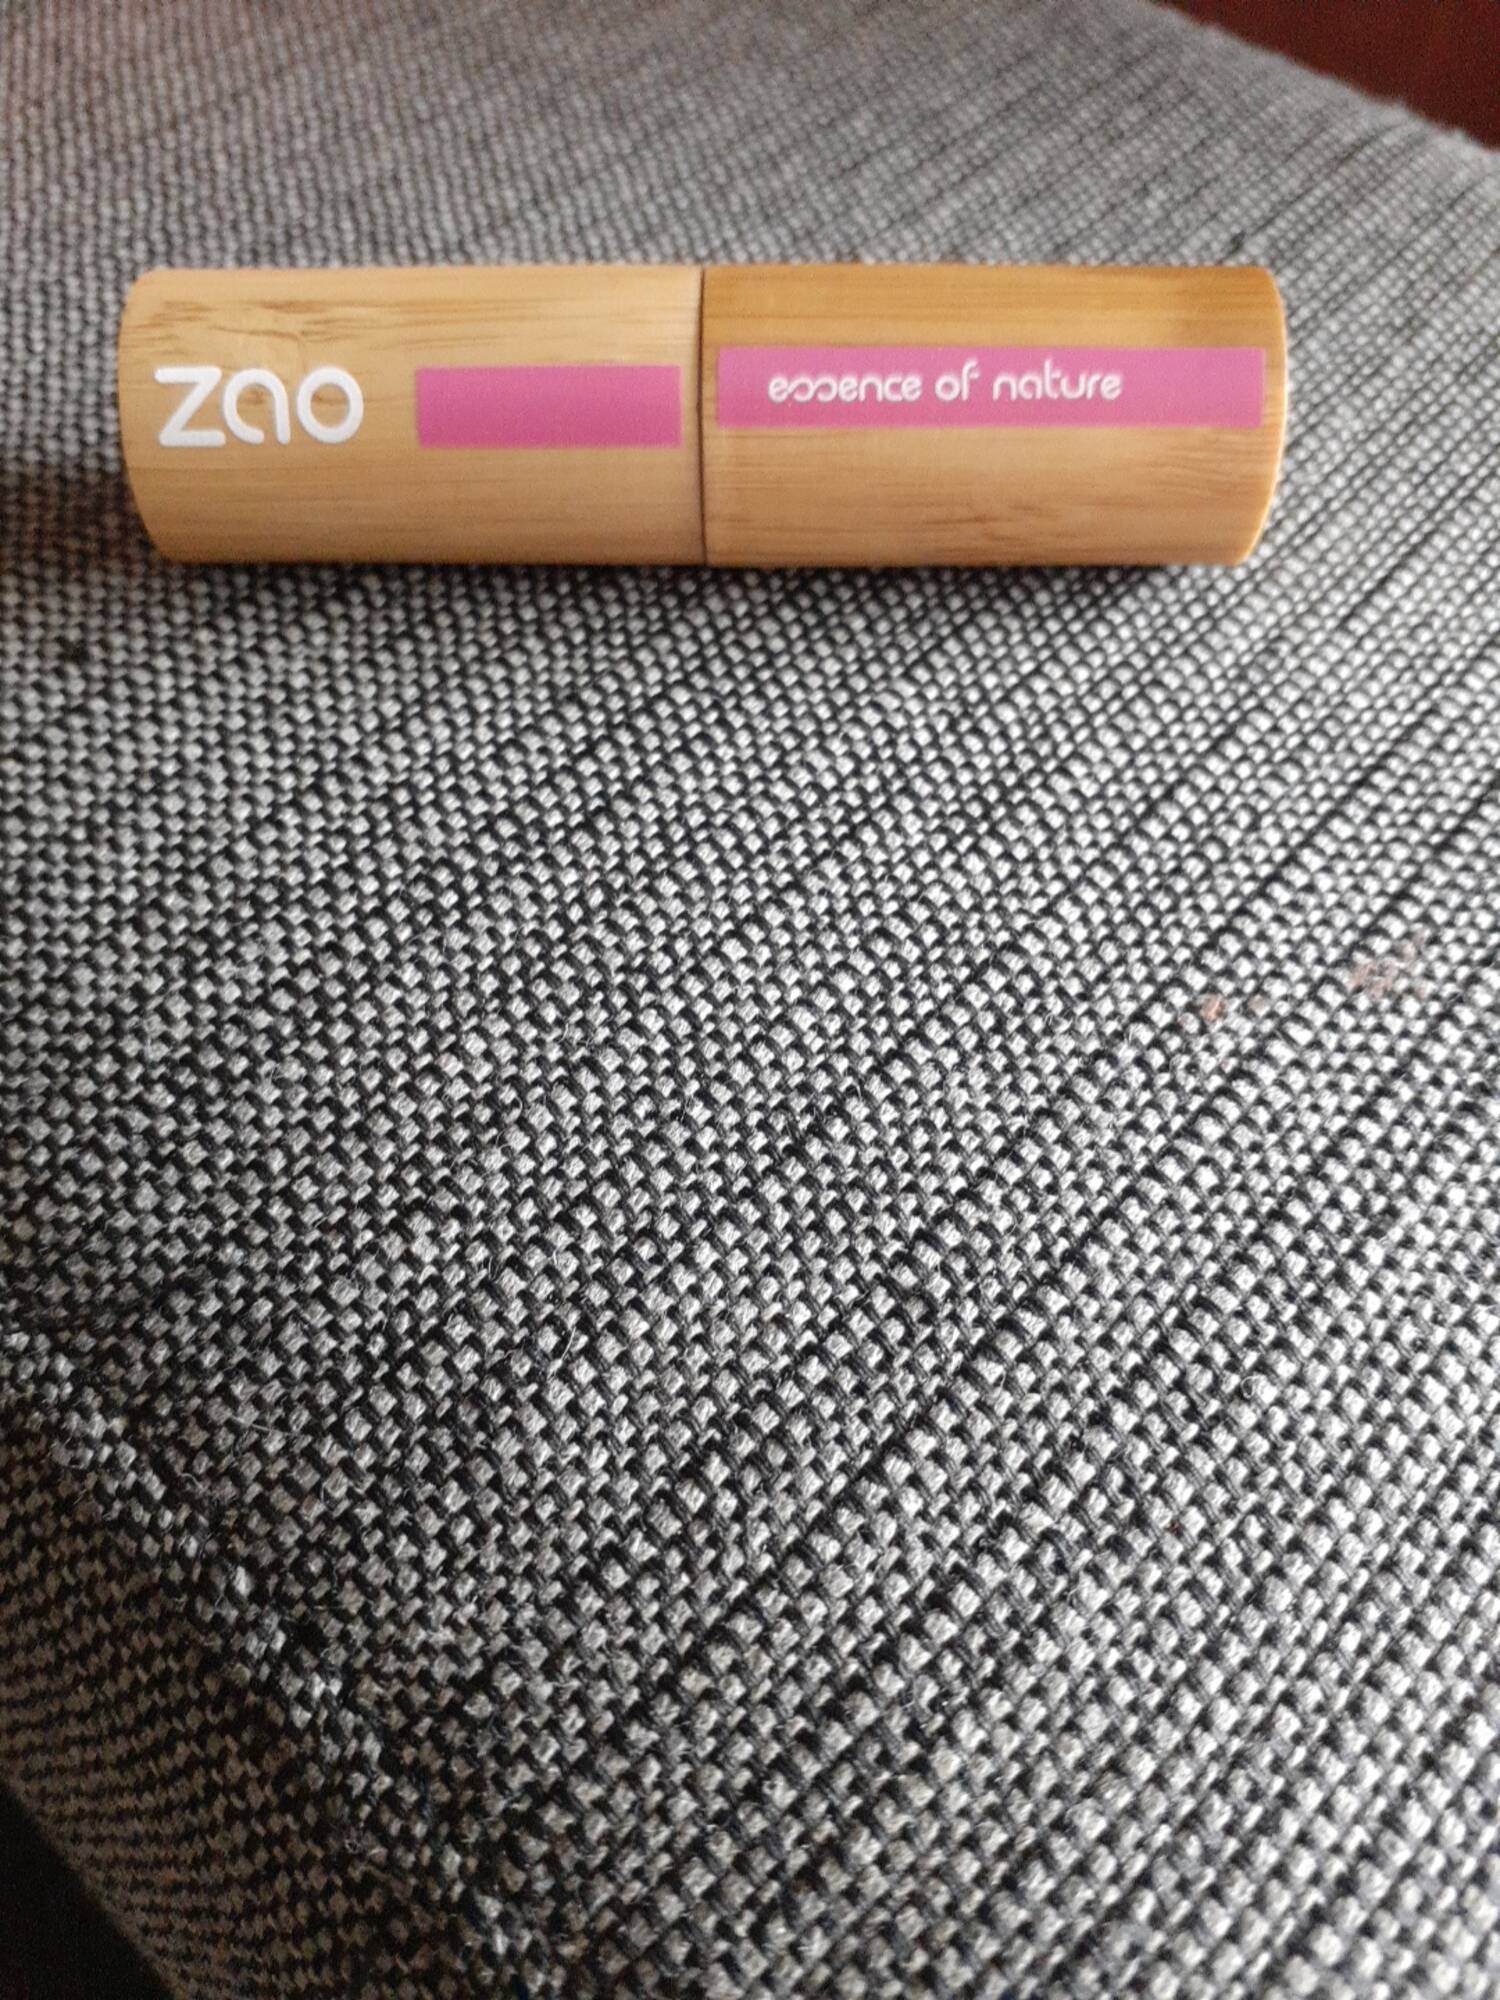 ZAO - Essence of nature - Rouge à lèvres 